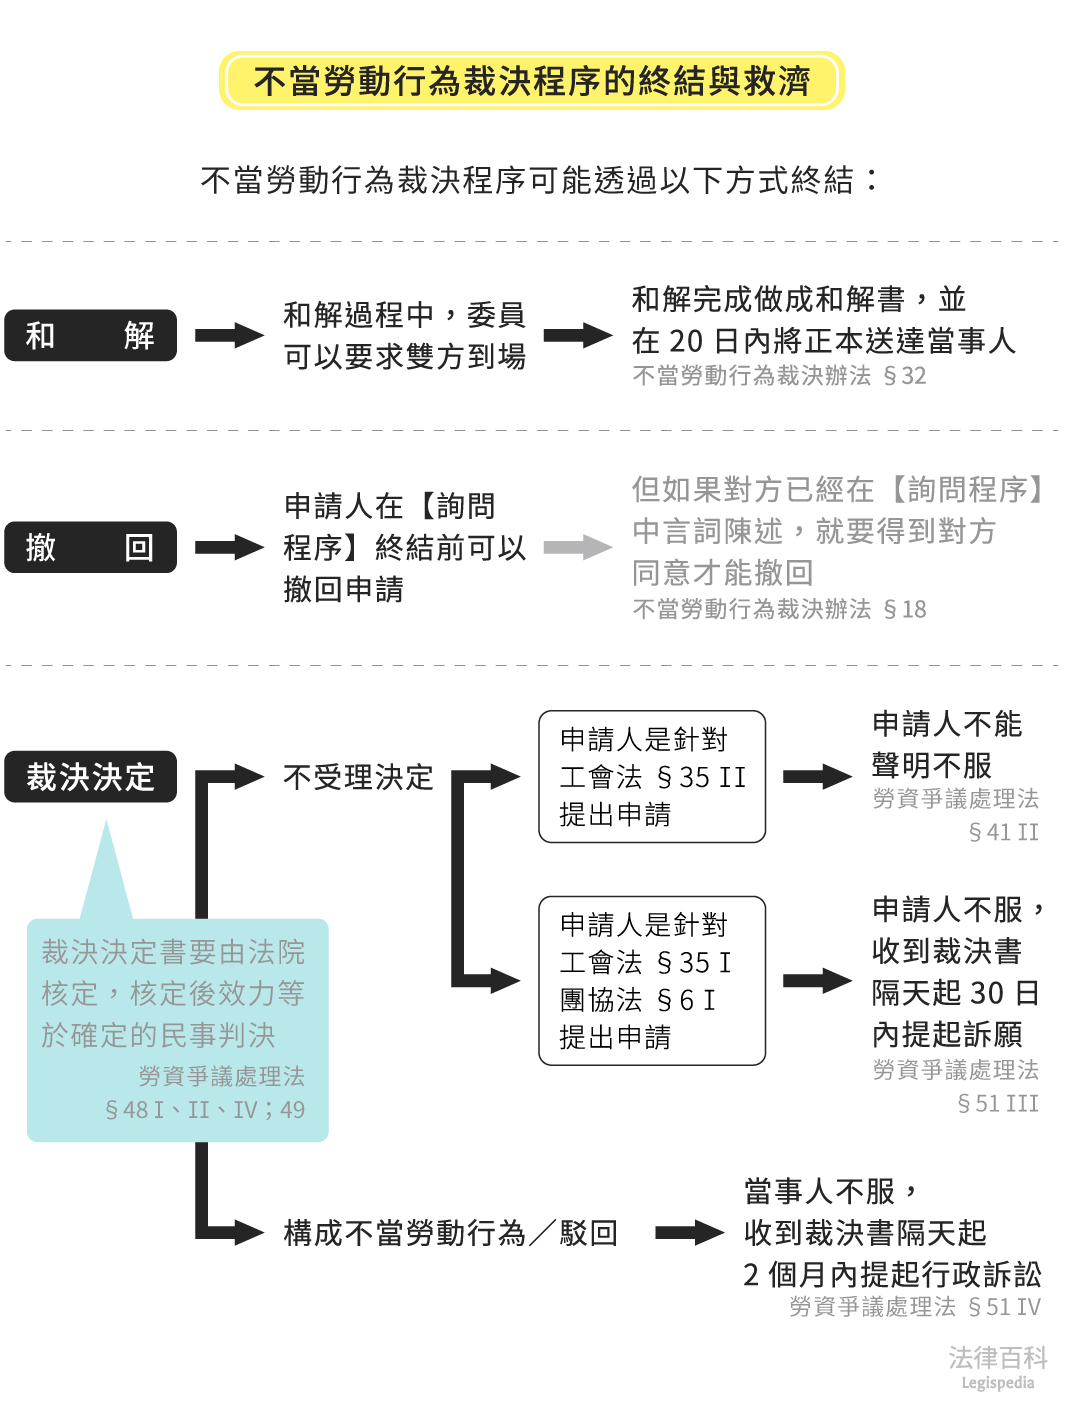 圖1　不當勞動行為裁決程序的終結與救濟||資料來源：匿名　/　繪圖：Yen